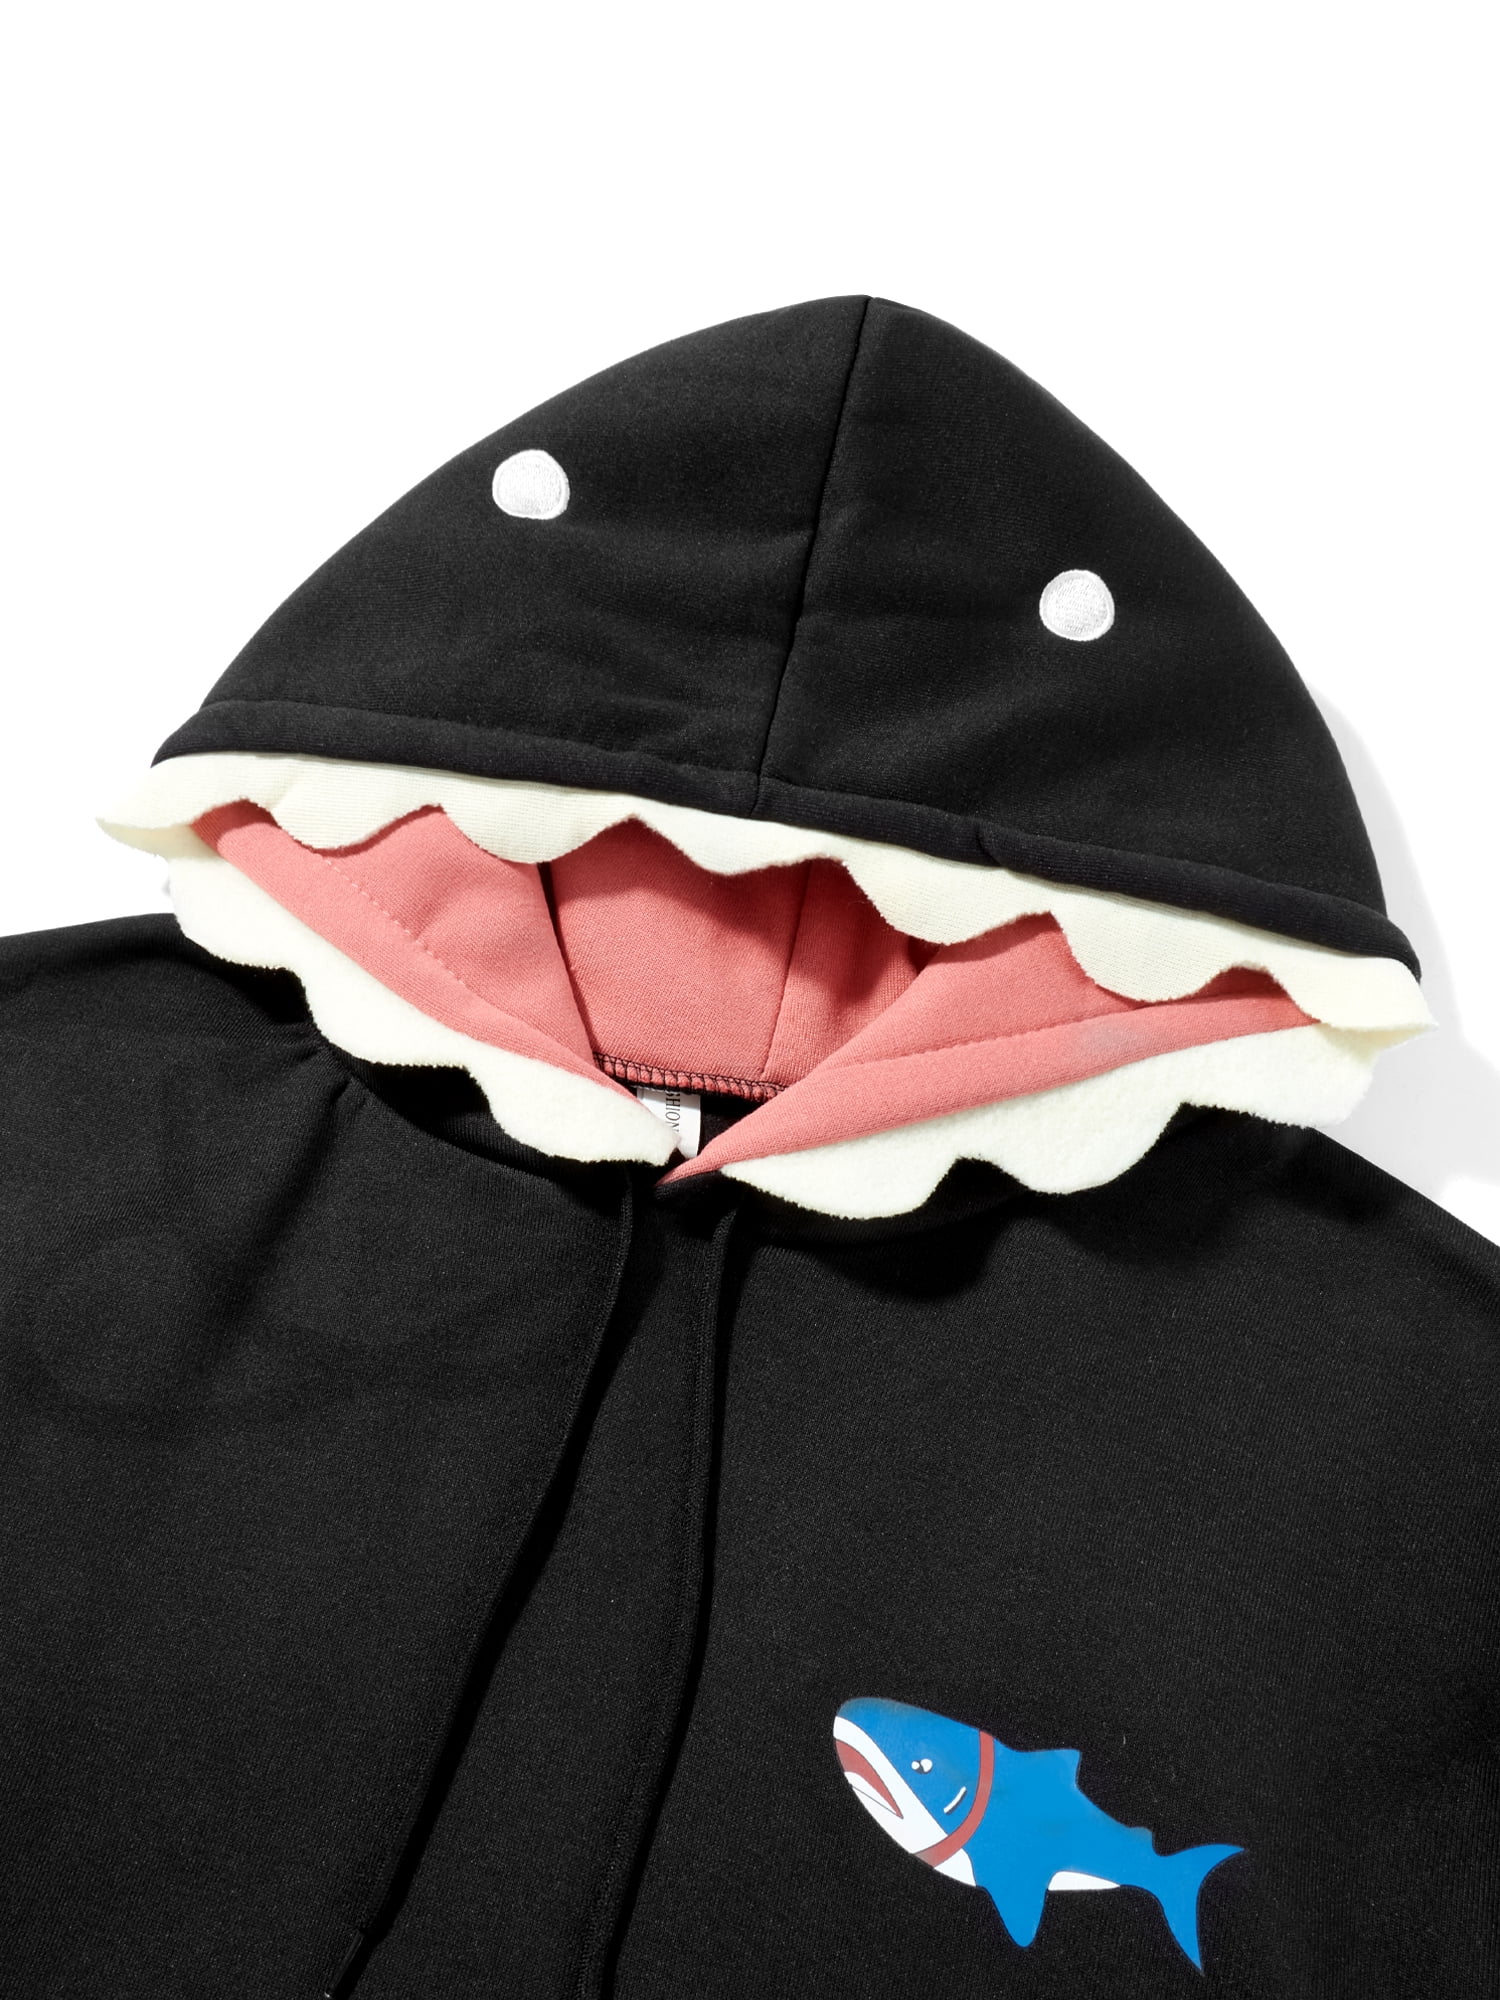 IUHDQIB Women's Cute Shark Hoodie Long Sleeve Funny Kawaii Animal